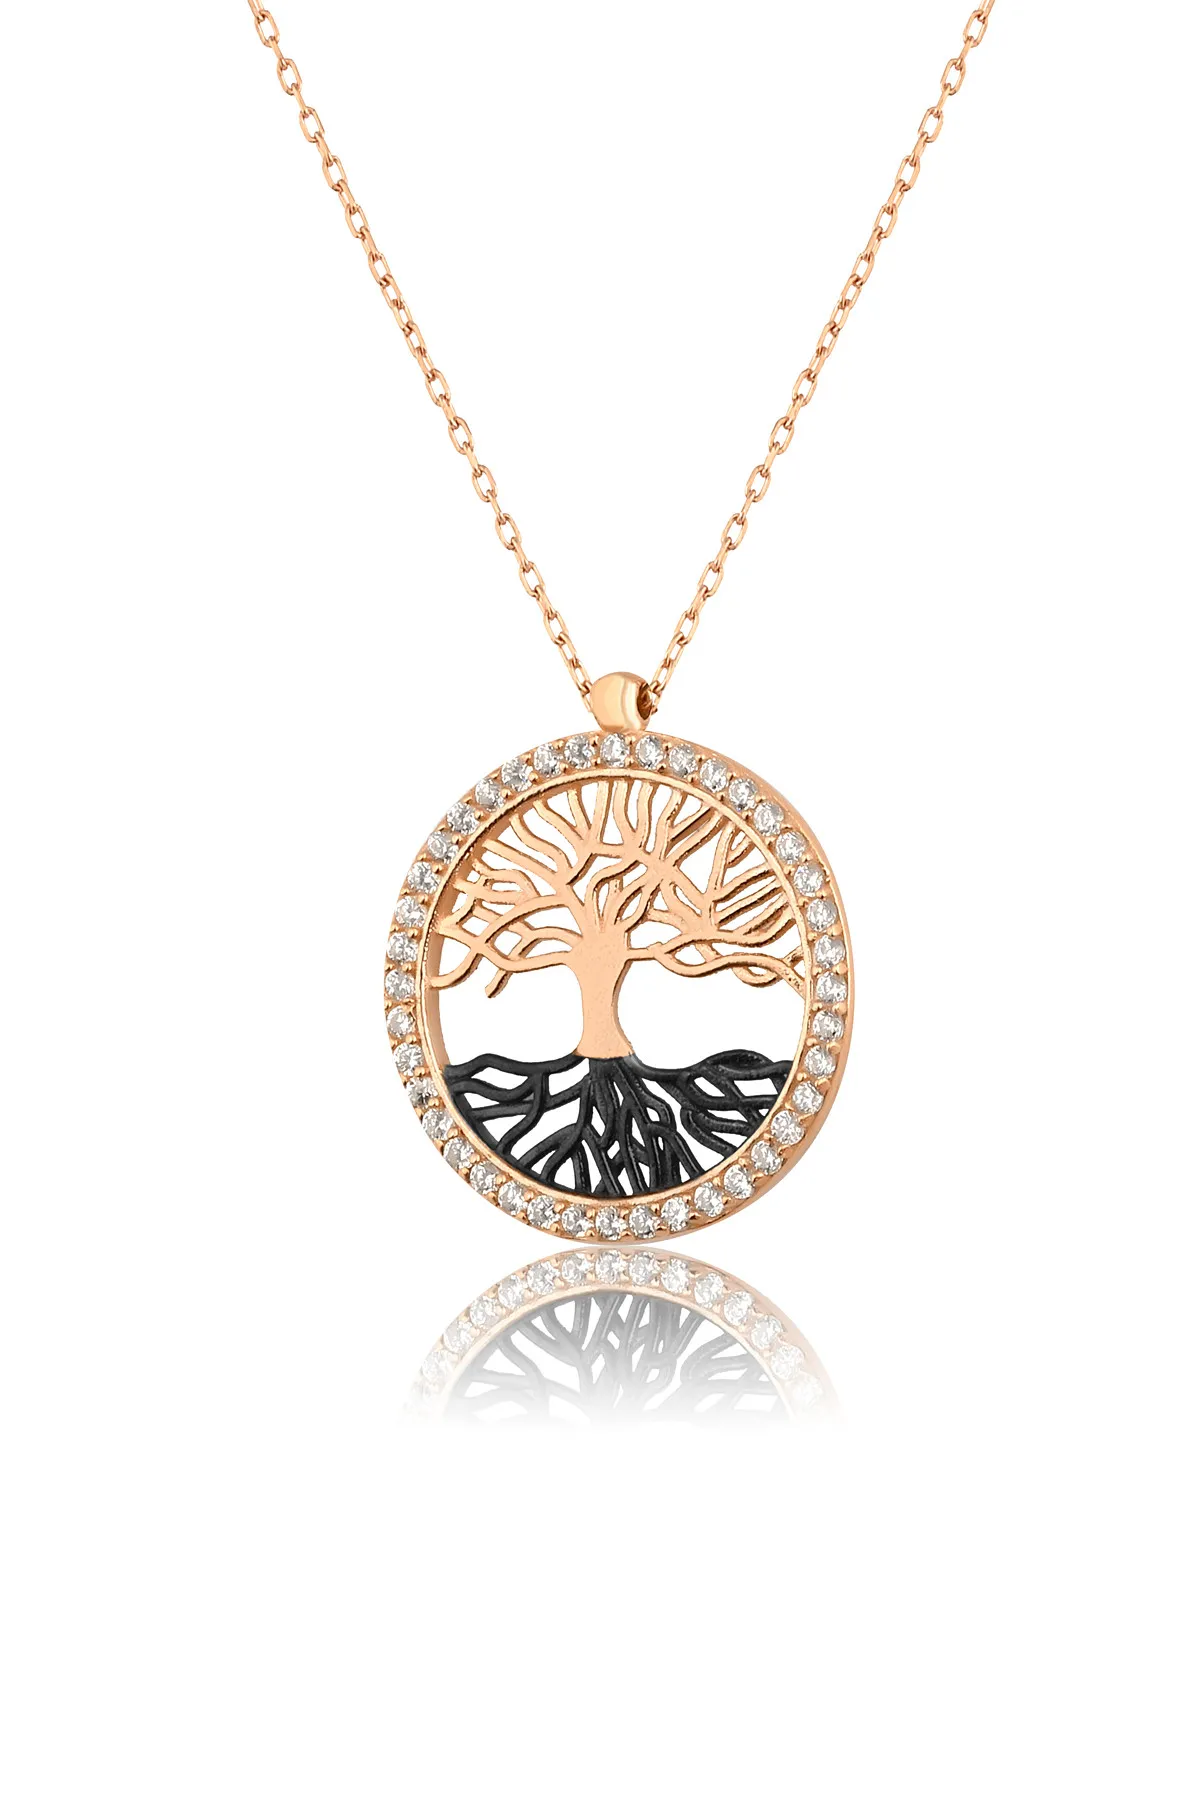 Серебряное ожерелье с дизайном дерева жизни pp2345 Larin Silver#5